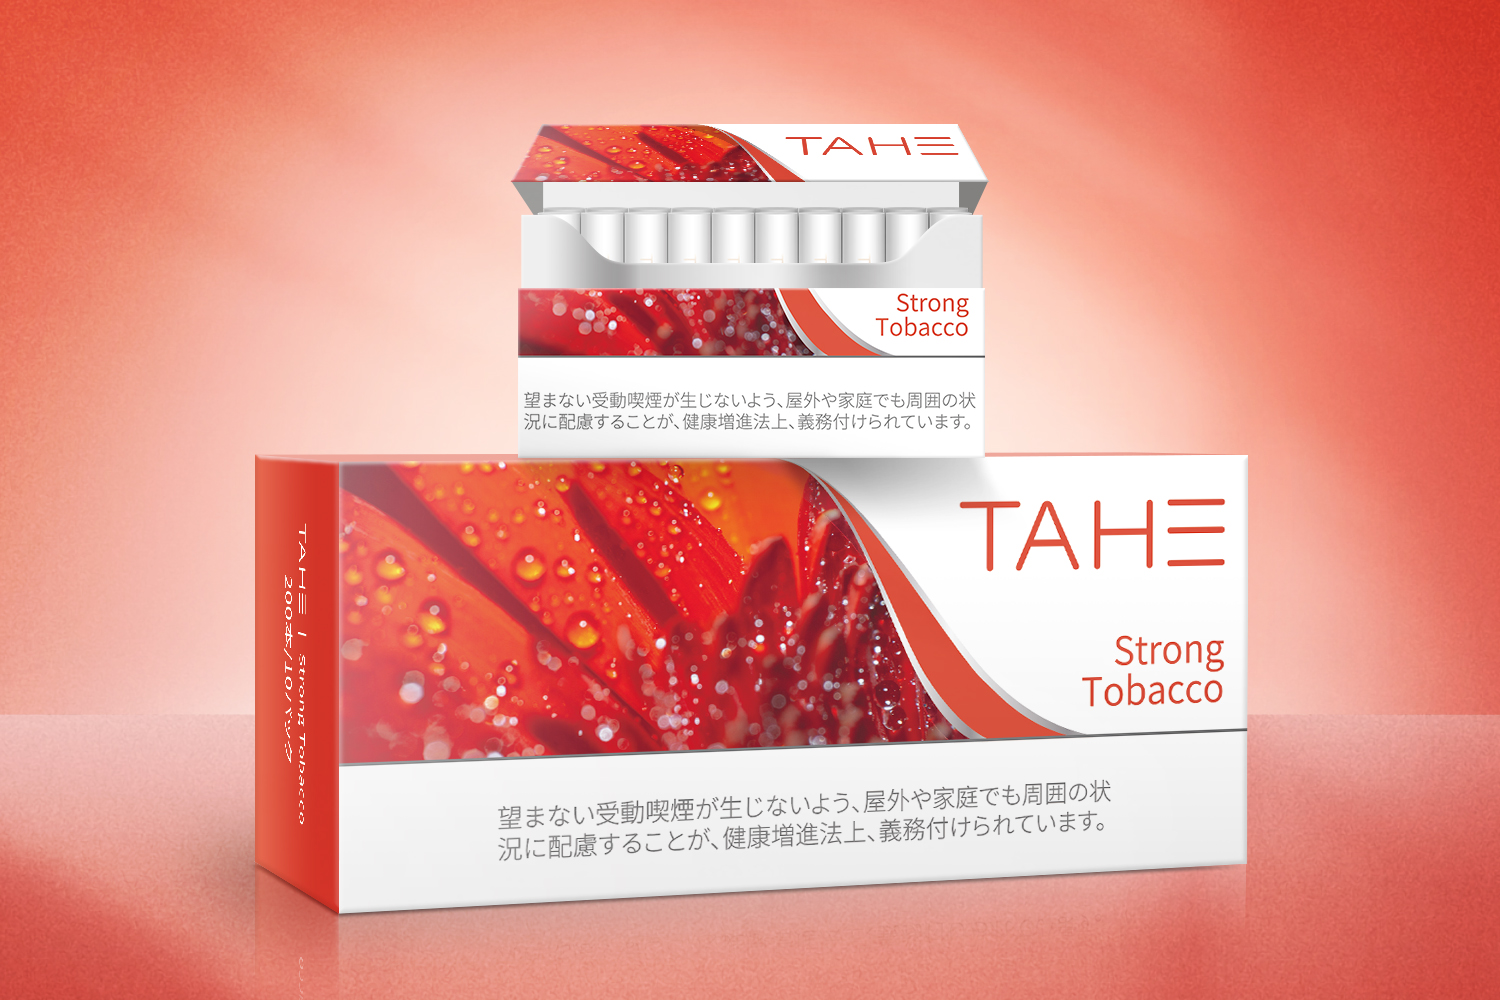   TAHE-烟弹包装设计